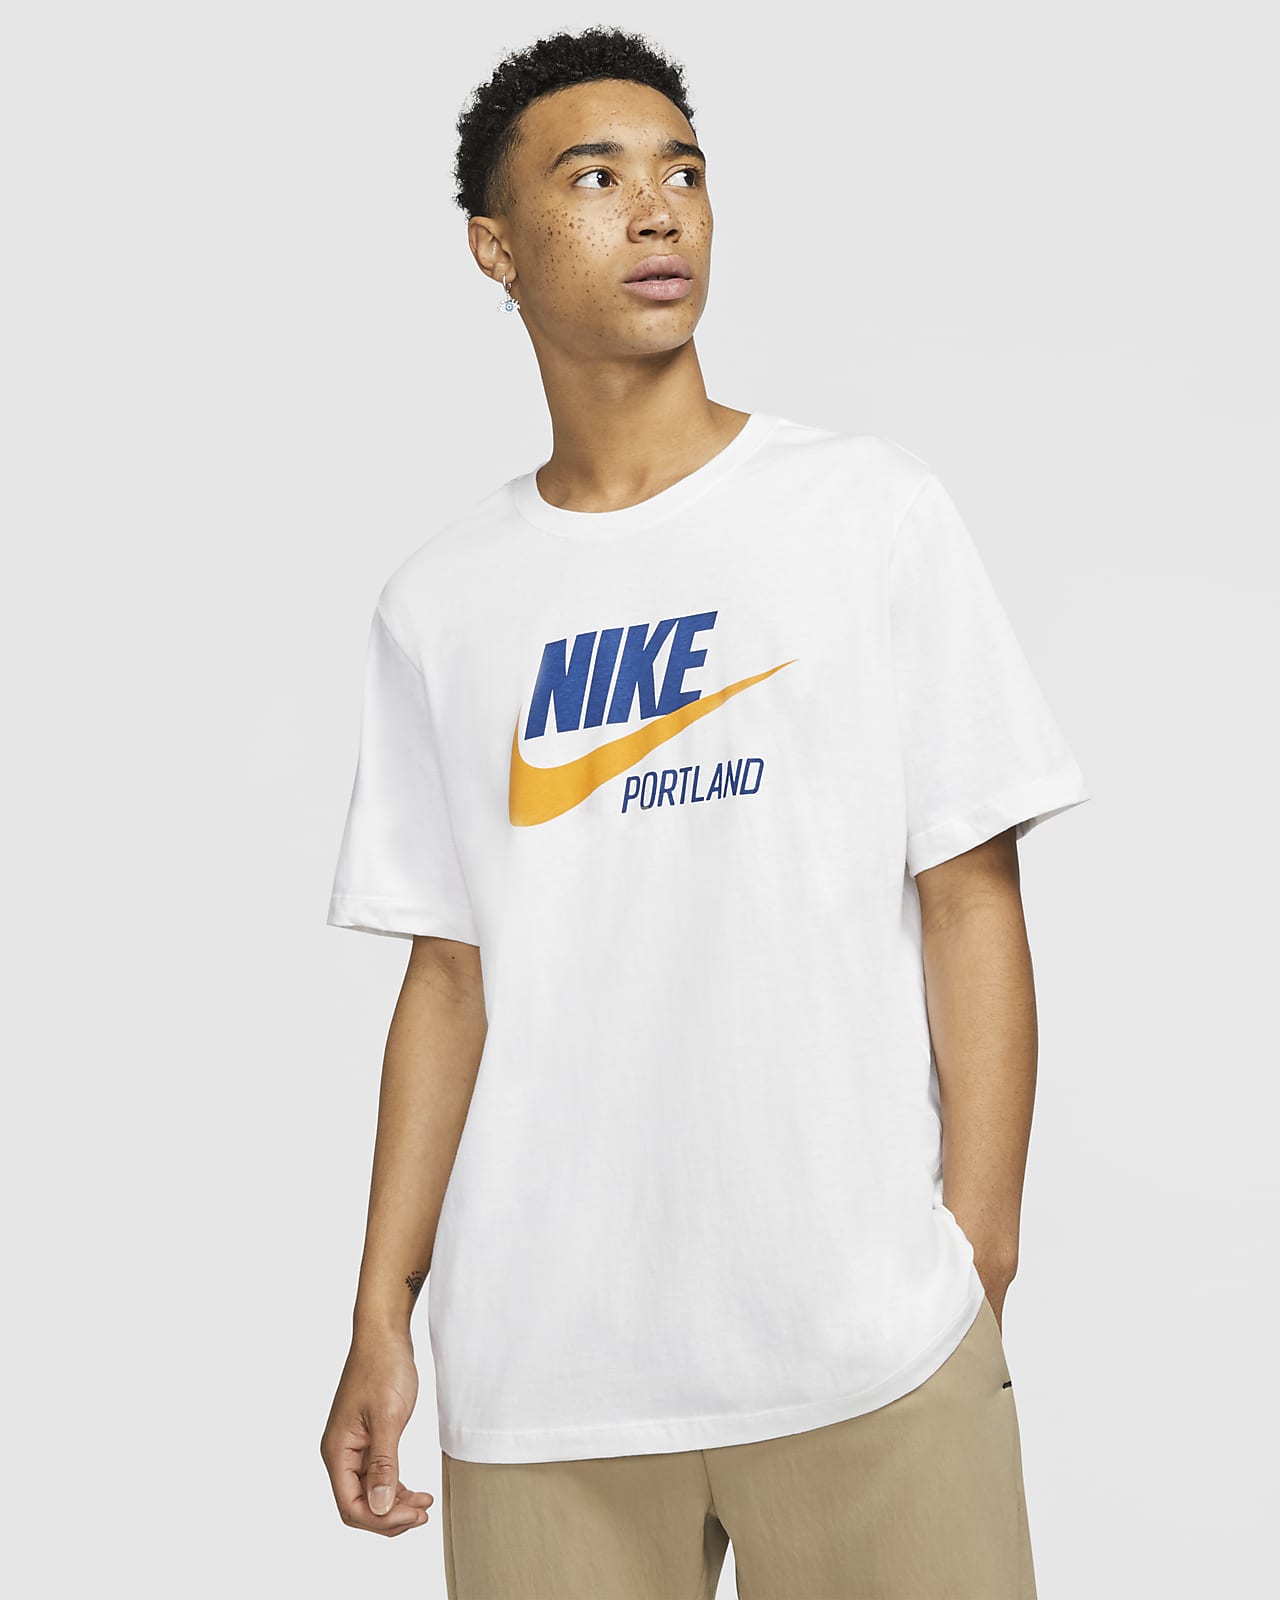 Nike Sportswear Portland Men's T-Shirt 